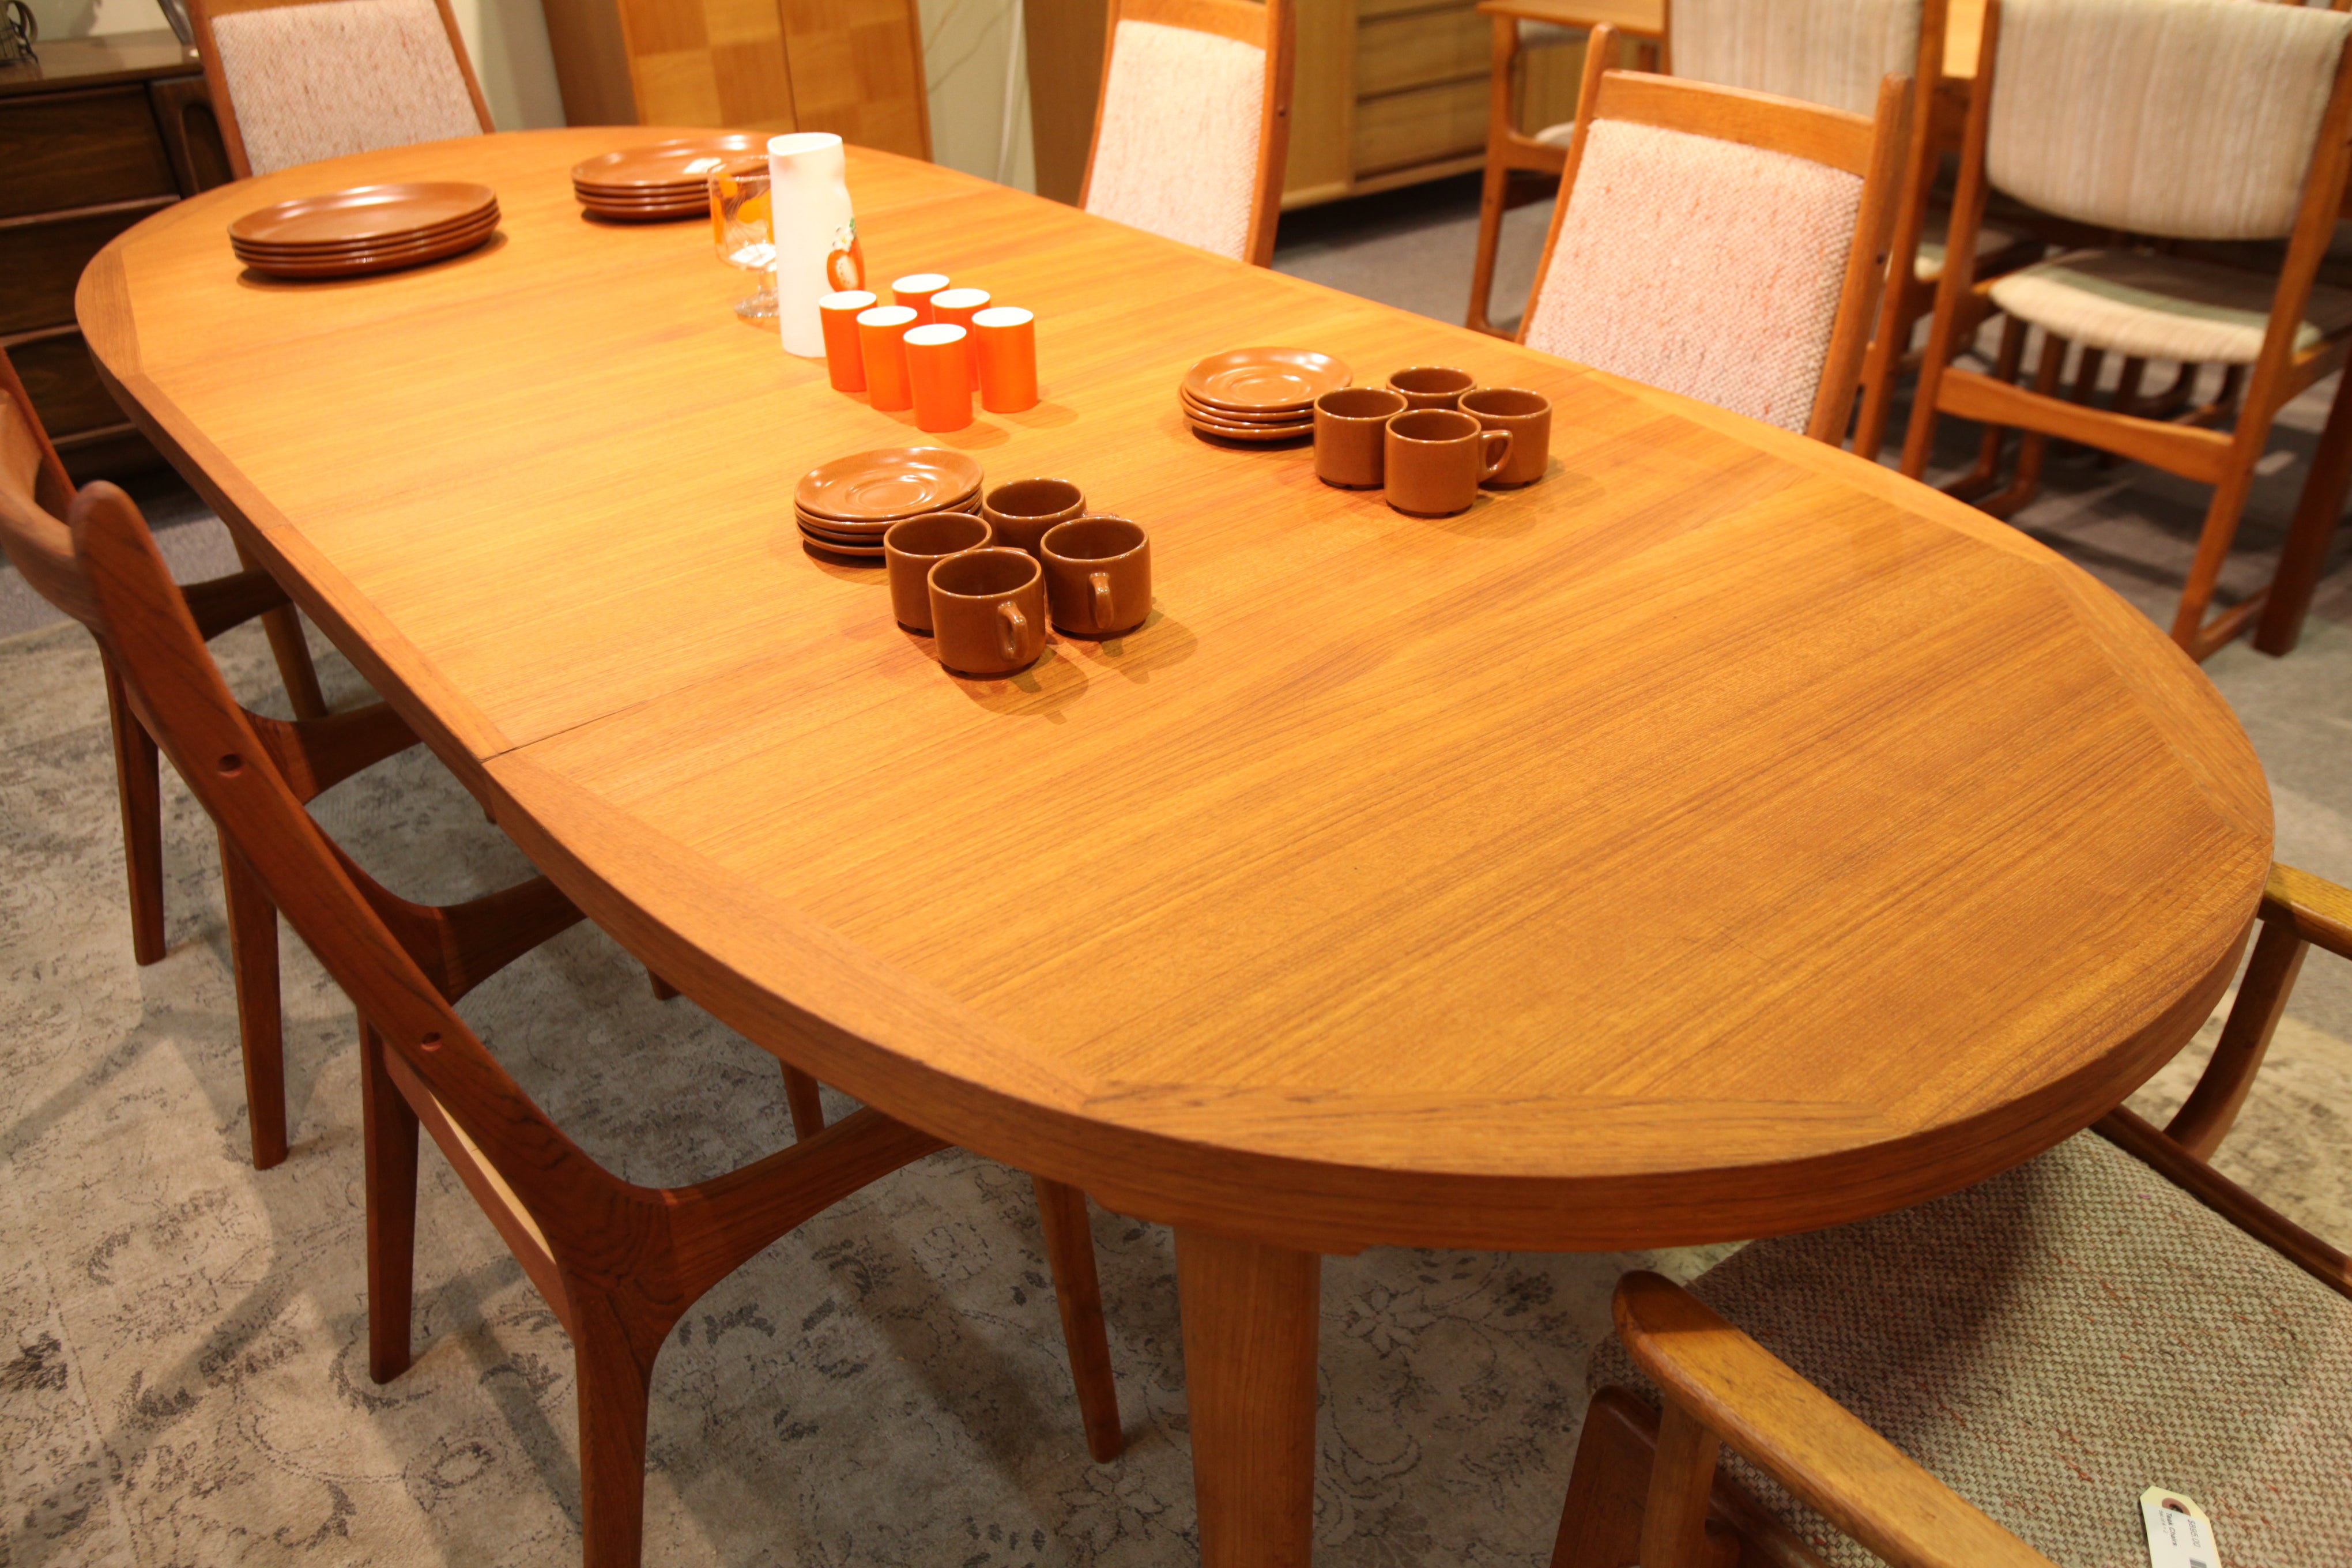 Fabulous Danish Teak Dining Table w/ 2 Leafs (103"L x 42.5"W) or (64"L x 42.5"W)